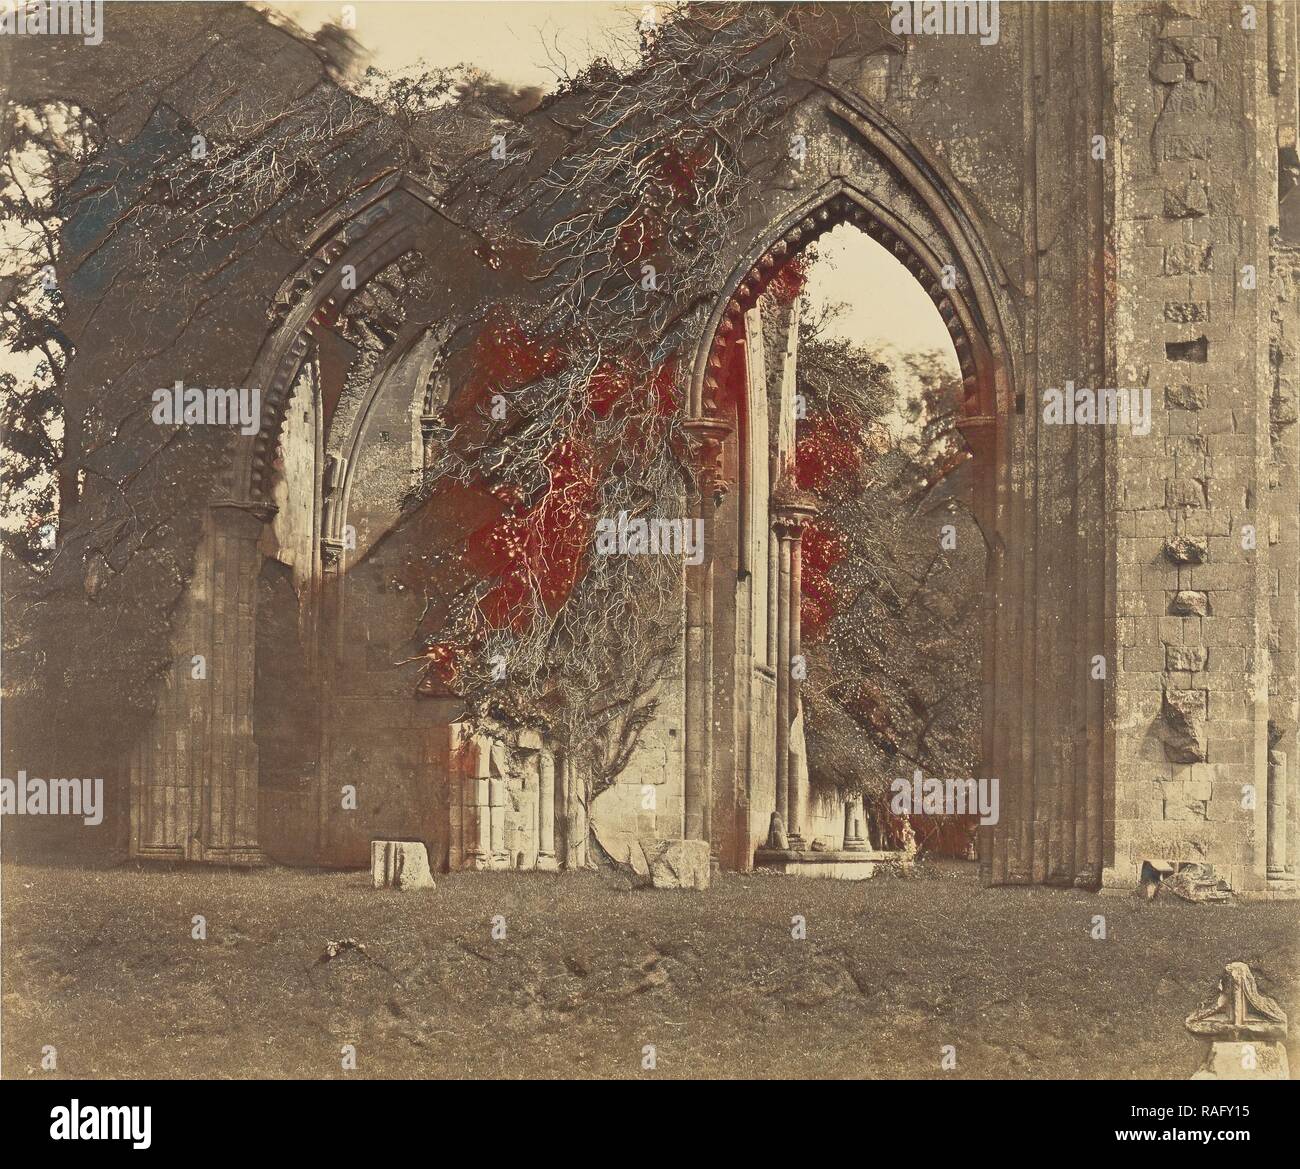 Abbazia di Glastonbury, gli archi della navata nord, Roger Fenton (inglese, 1819 - 1869), Glastonbury, Inghilterra, 1858 reinventato Foto Stock